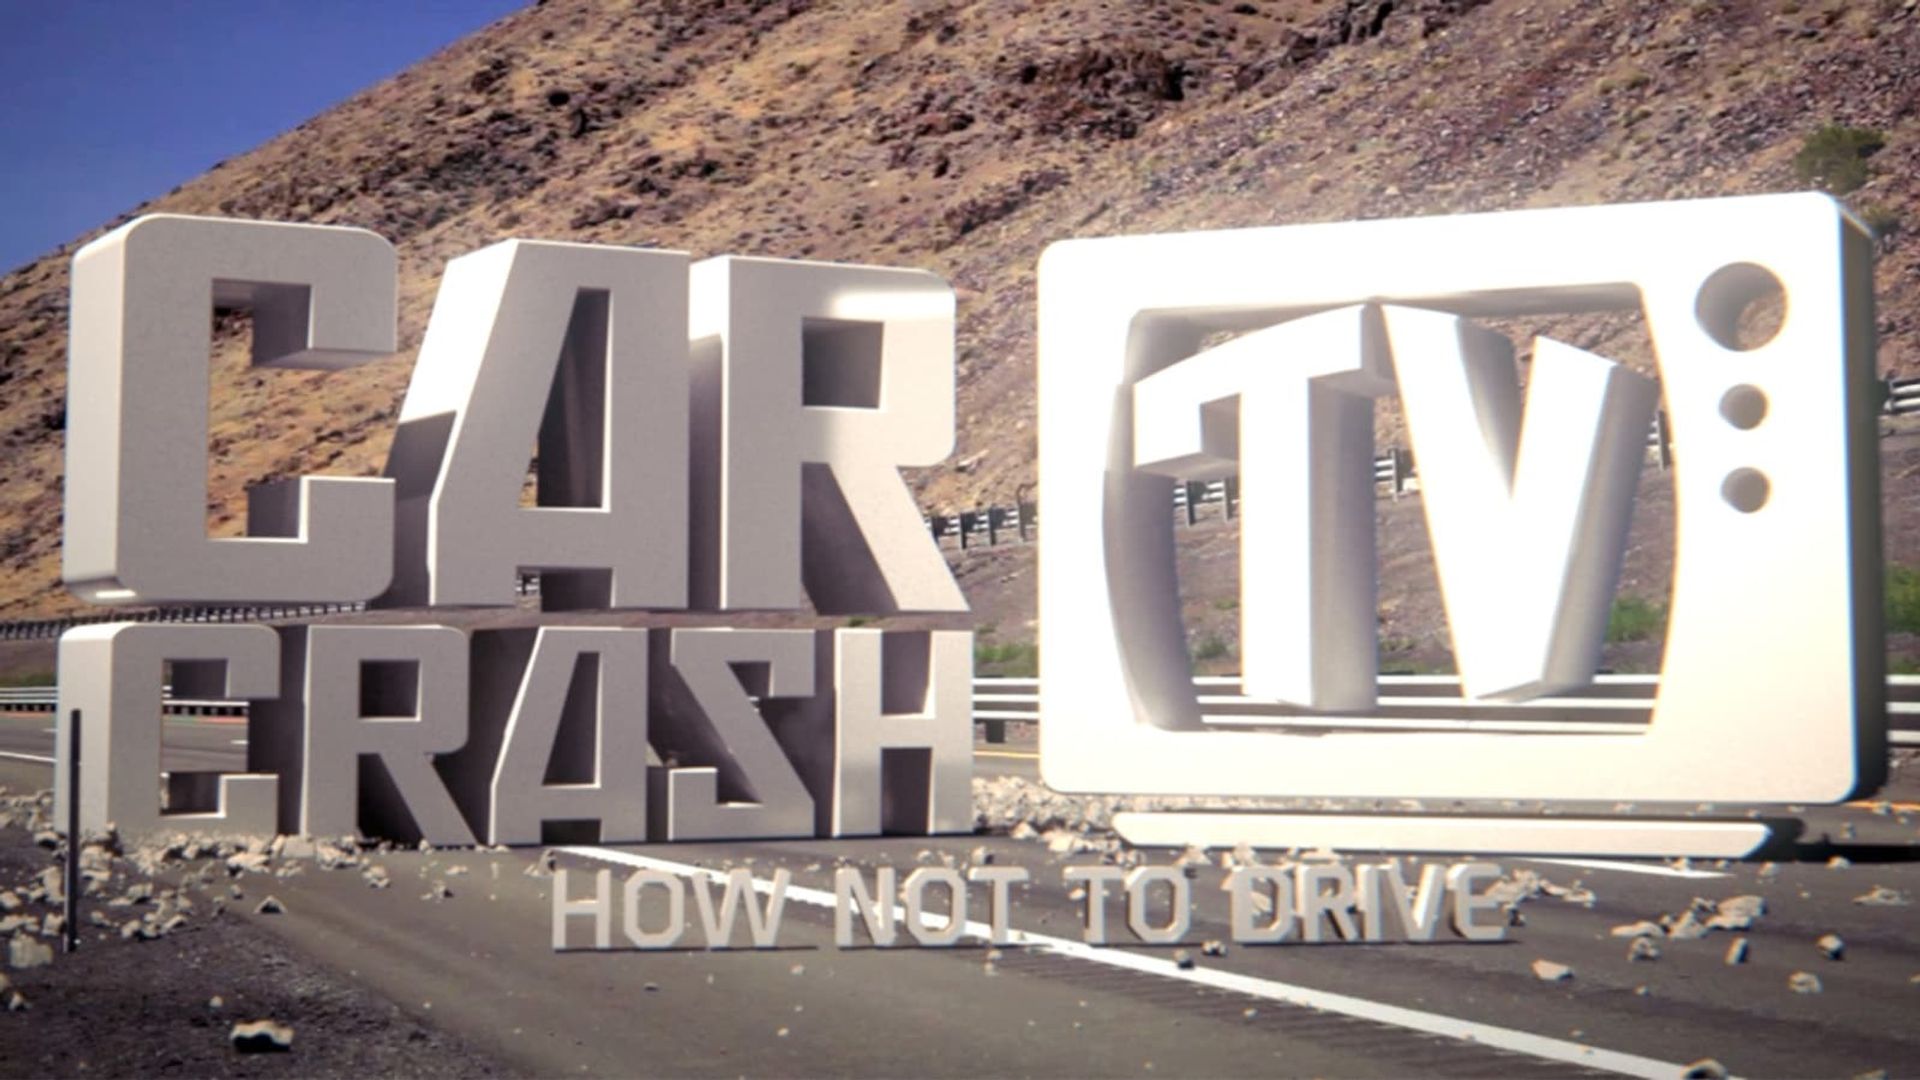 Car Crash TV Backdrop